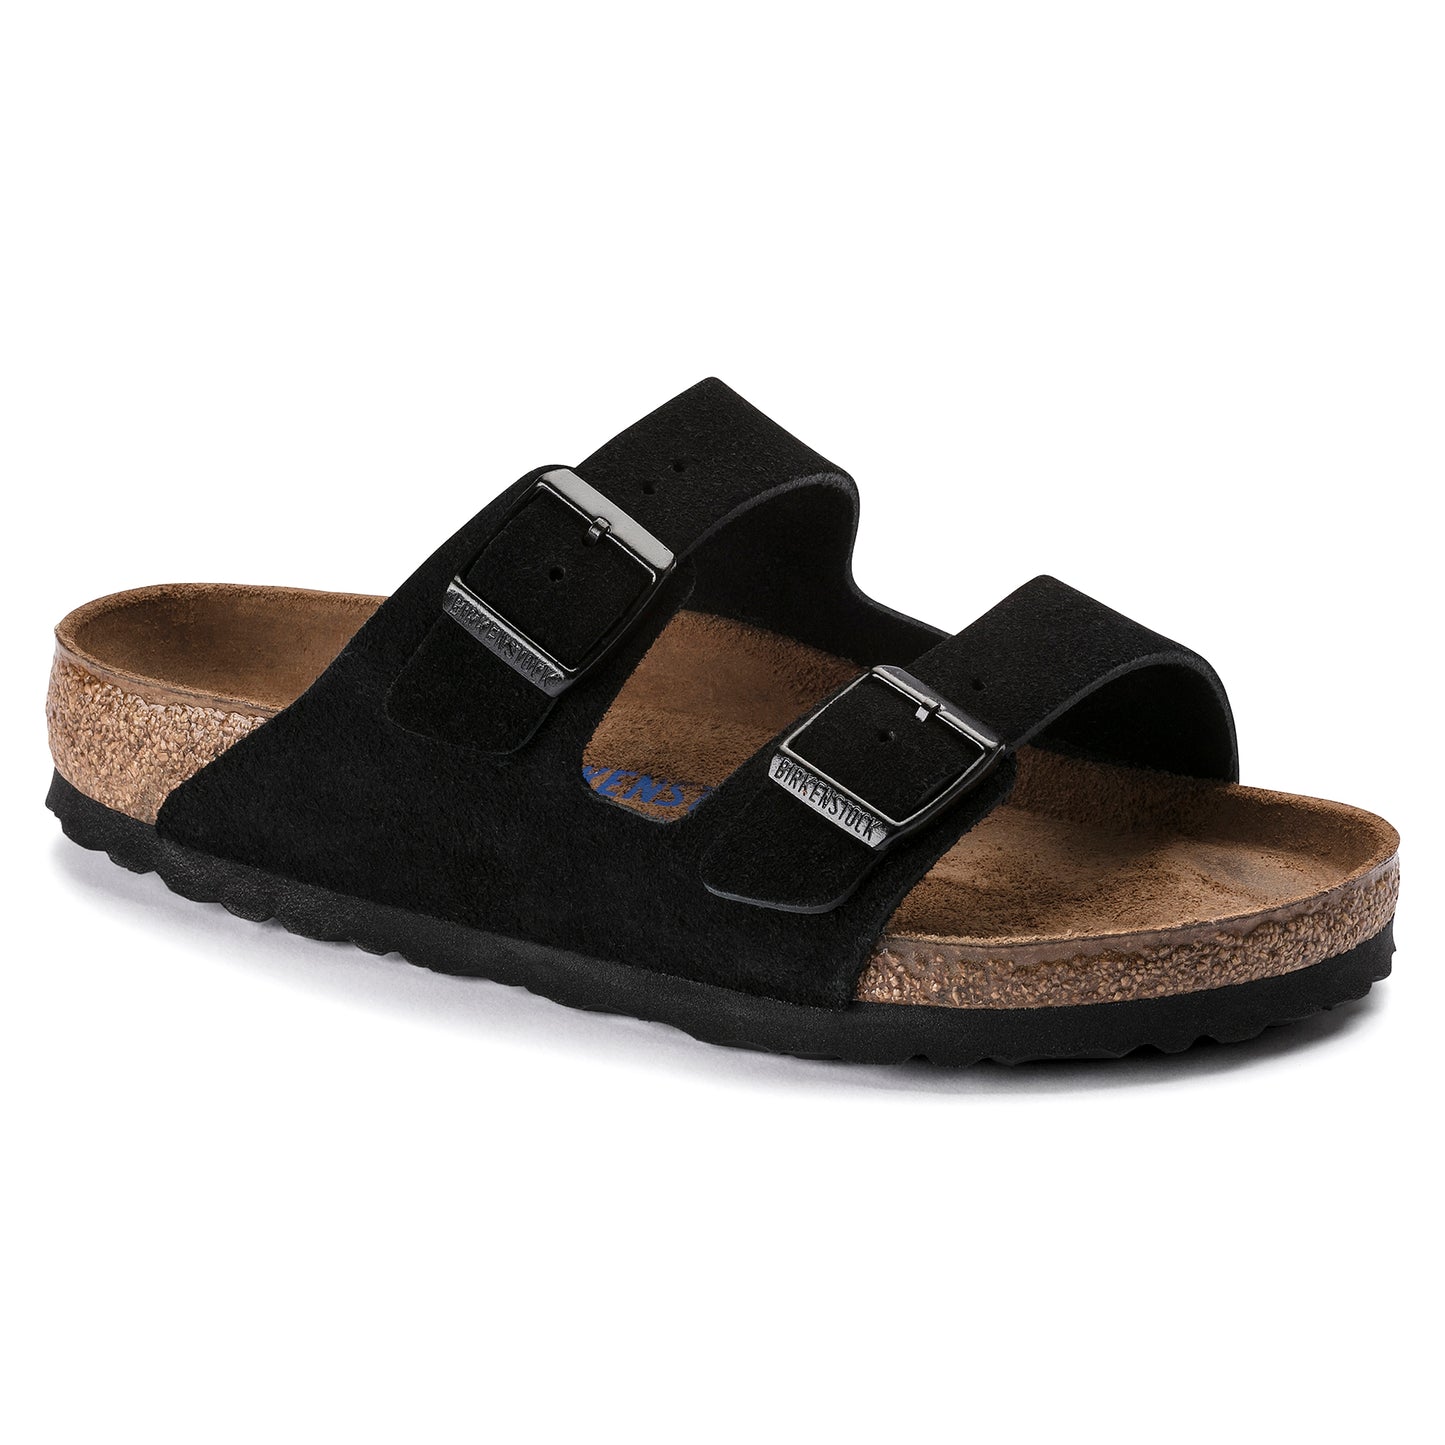 Unisex Arizona Soft Footbed Suede Leather Slides